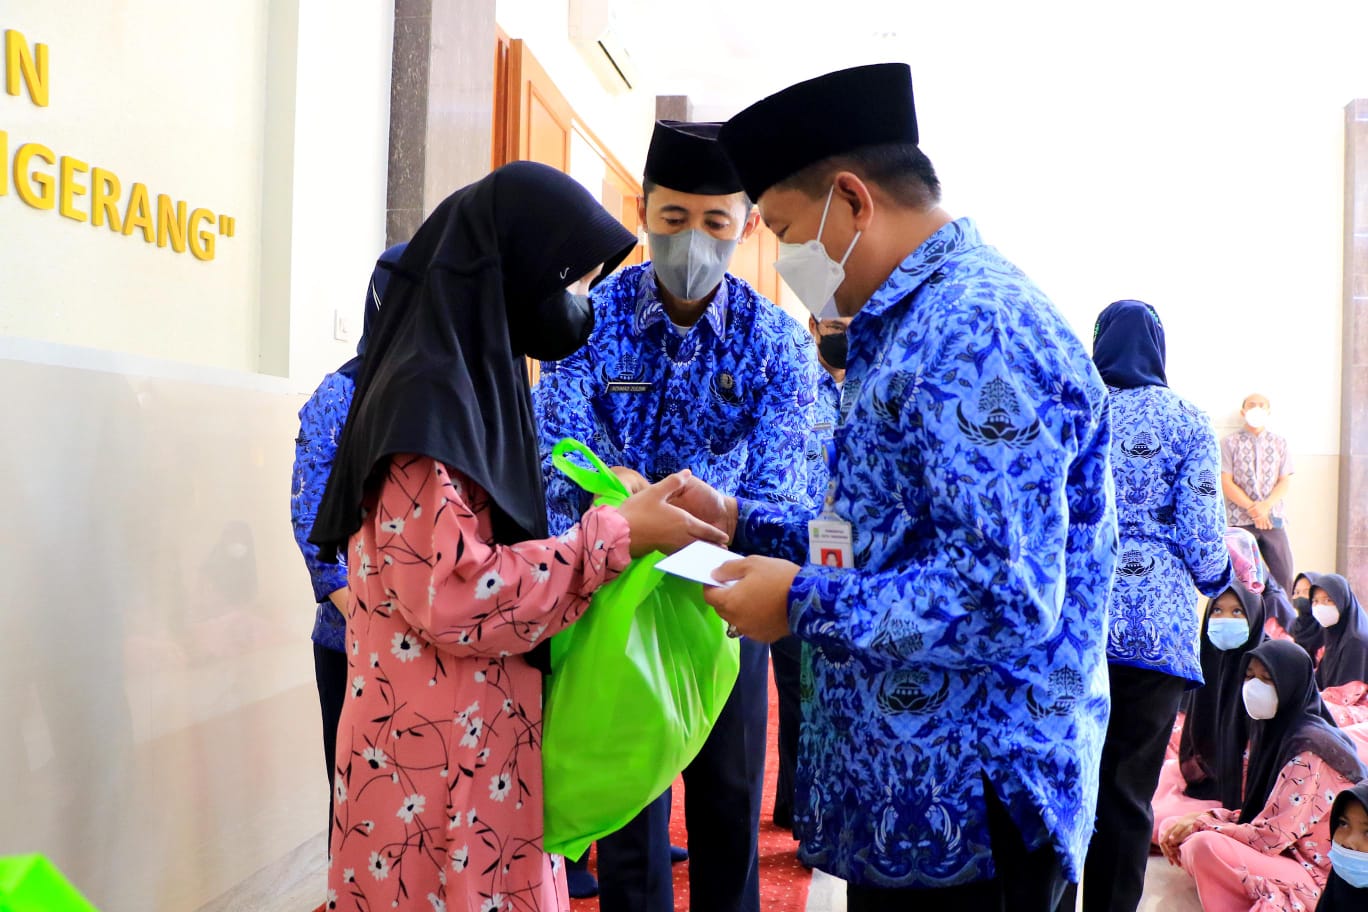 Wali Kota Tangerang H. Arief R. Wismansyah saat memberikan santunan langsung kepada anak yatim di Yayasan Putra Asih Tangerang, Rabu 17 November 2021.